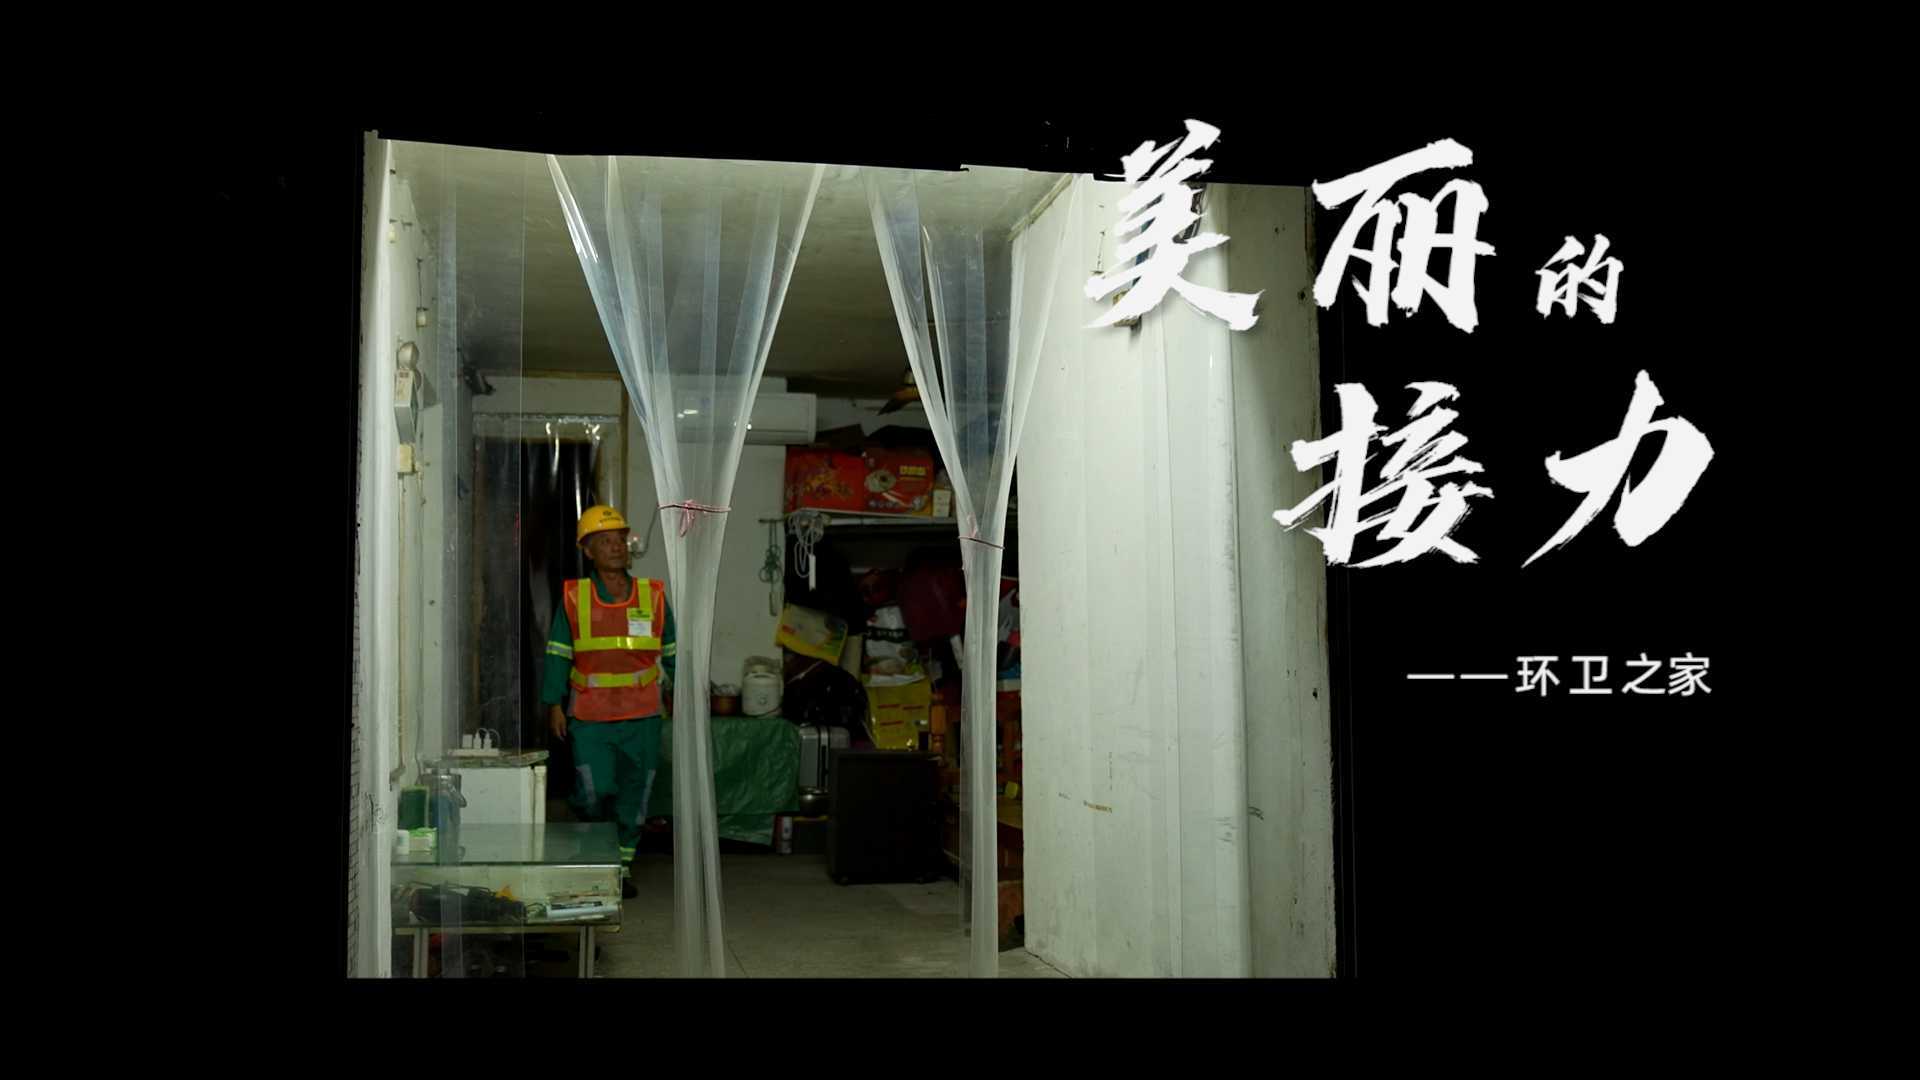 【纪录片】深圳环卫工人节特别策划